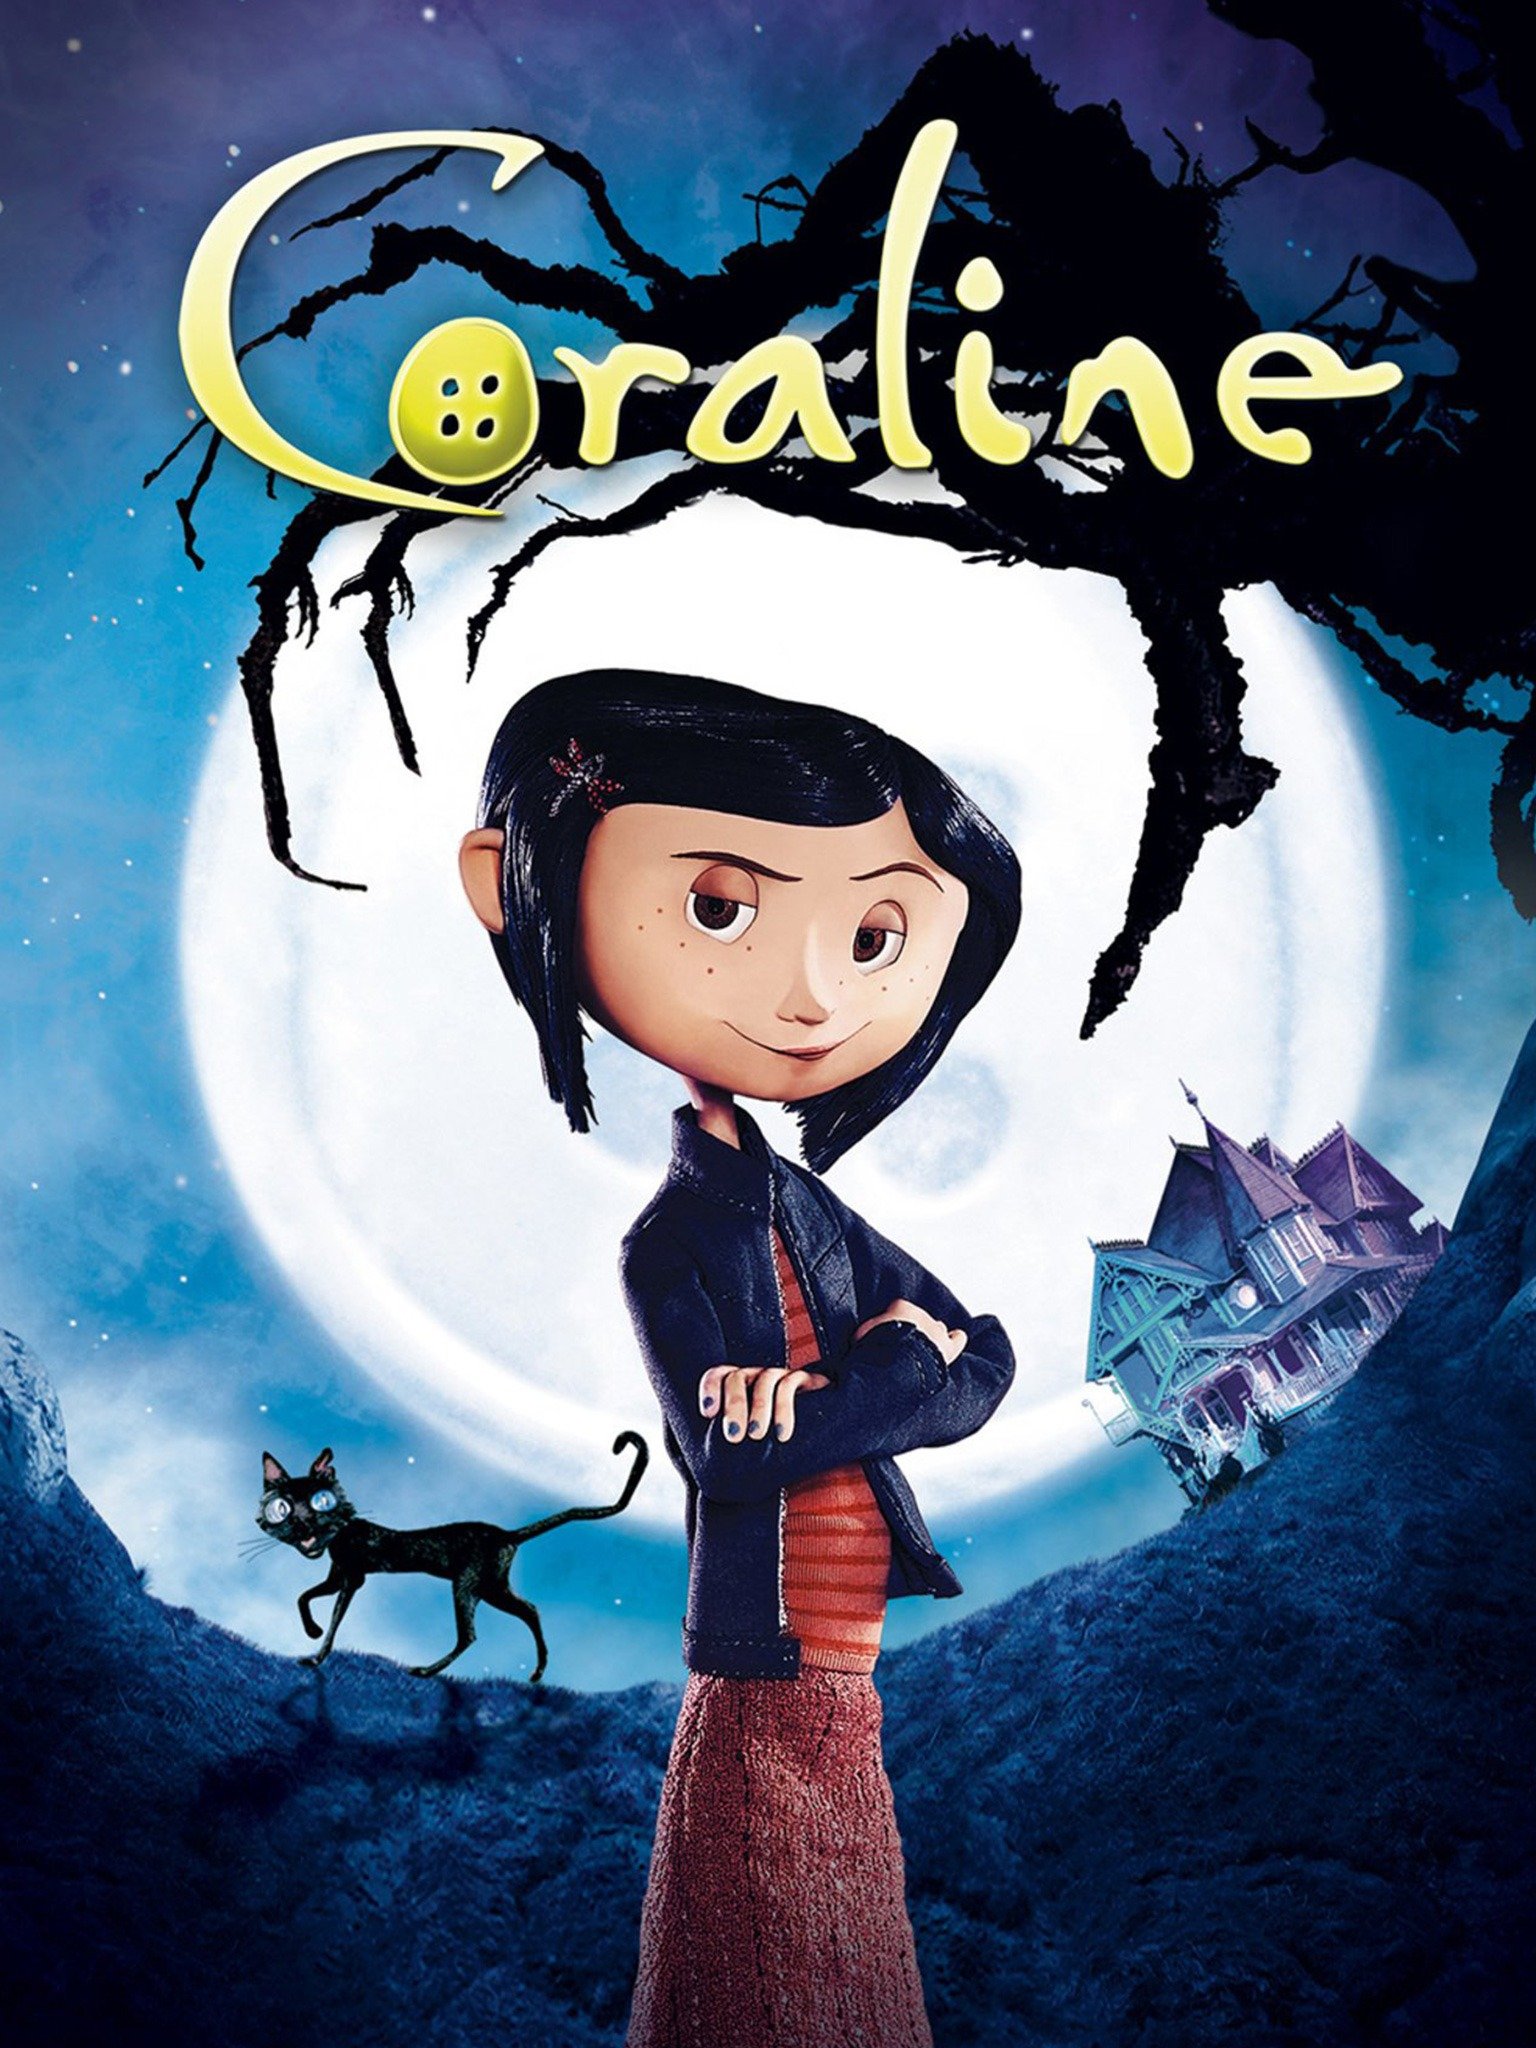 Xin Phim Coraline (Hoạt Hình) - 2009 | HDVietnam - Hơn cả đam mê